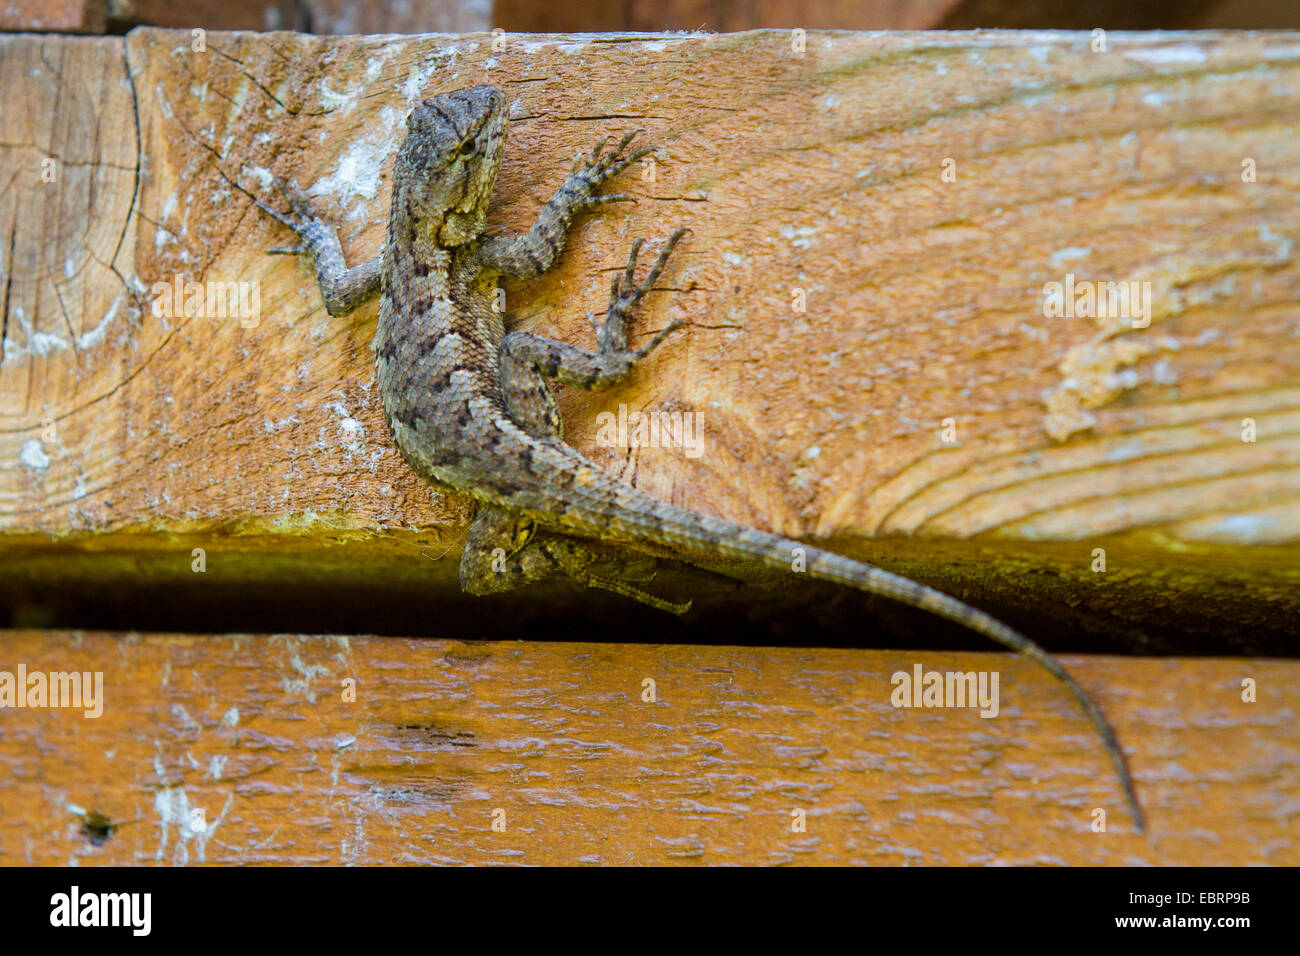 Valla lagarto, lagarto cerco oriental (Sceloporus undulatus), sentada en el suelo de madera, EE.UU., Tennessee, Great Smoky Mountains National Park Foto de stock